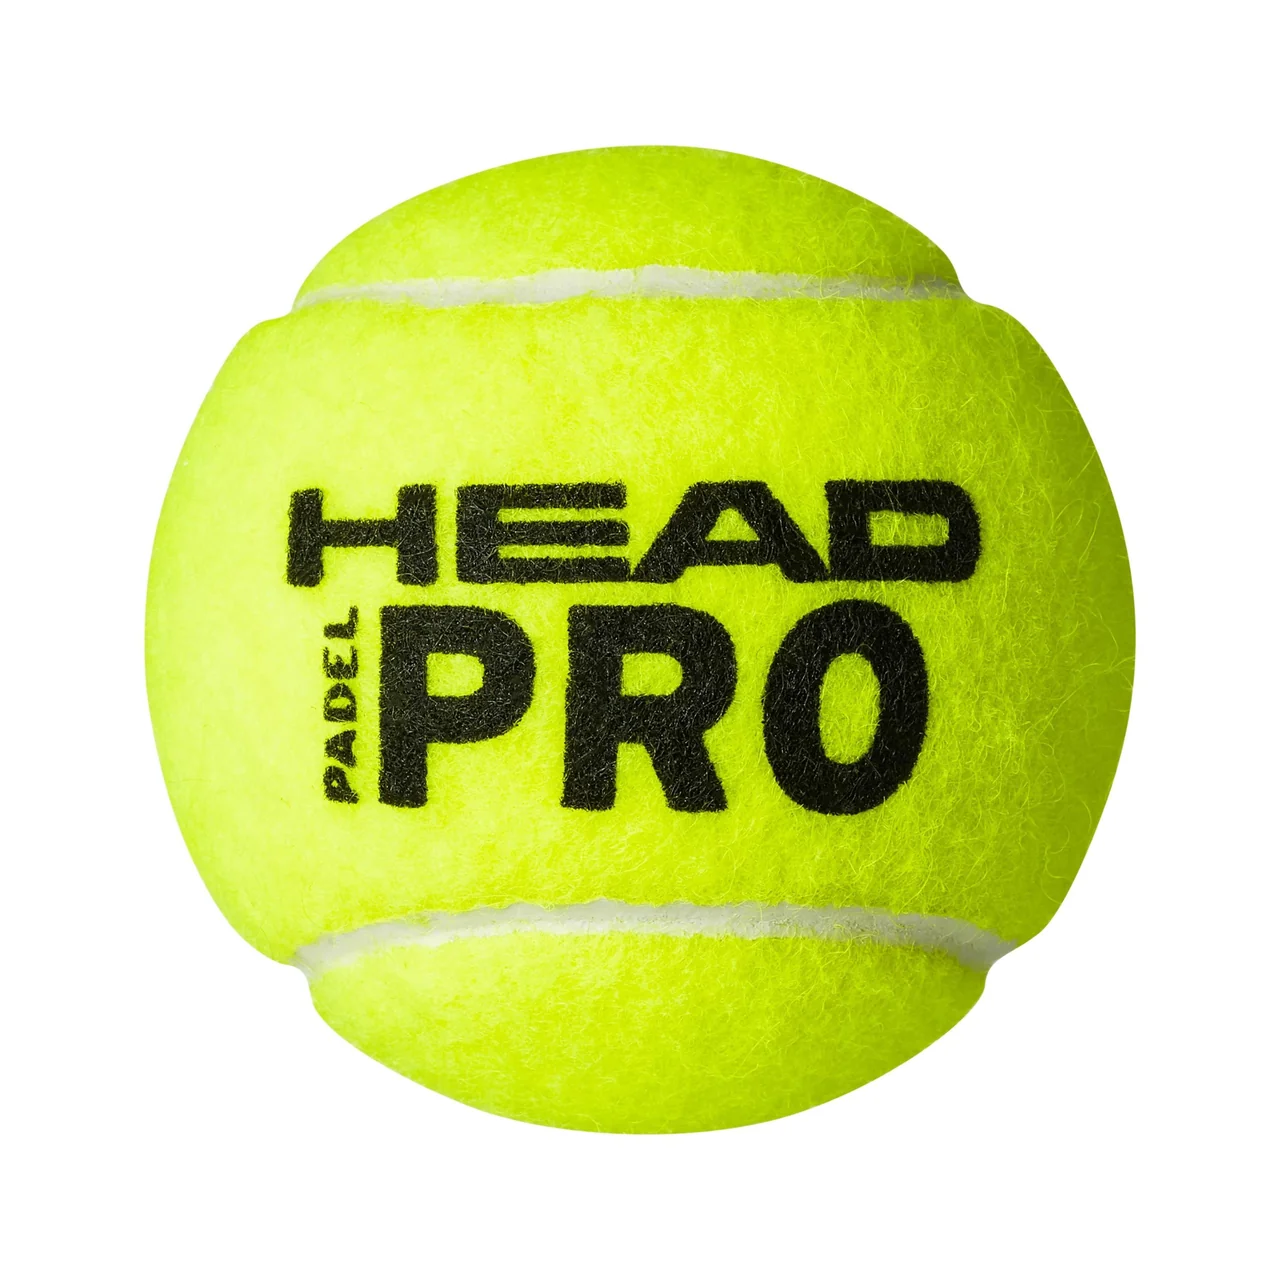 Head Head Padel Pro Ball 3 Kokers